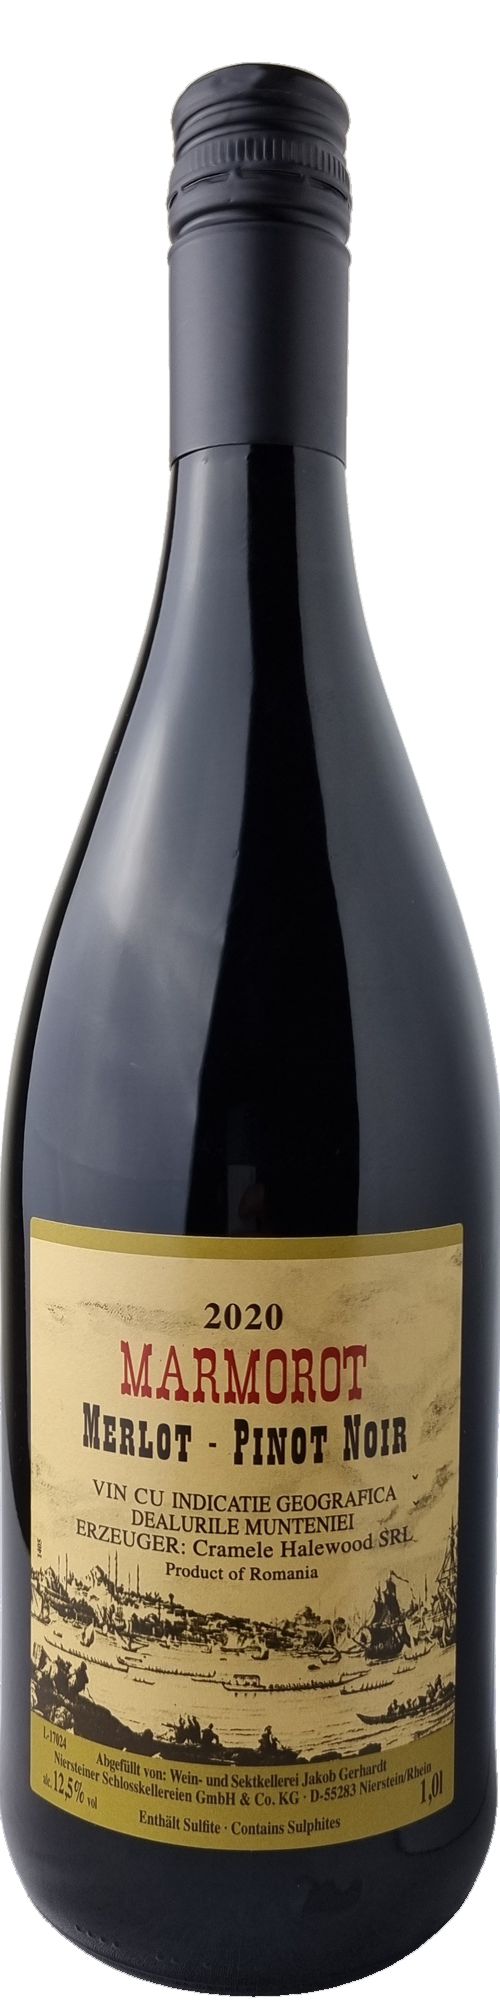 Marmorot Merlot Pinot Noir Rotwein lieblich 1,0 Liter